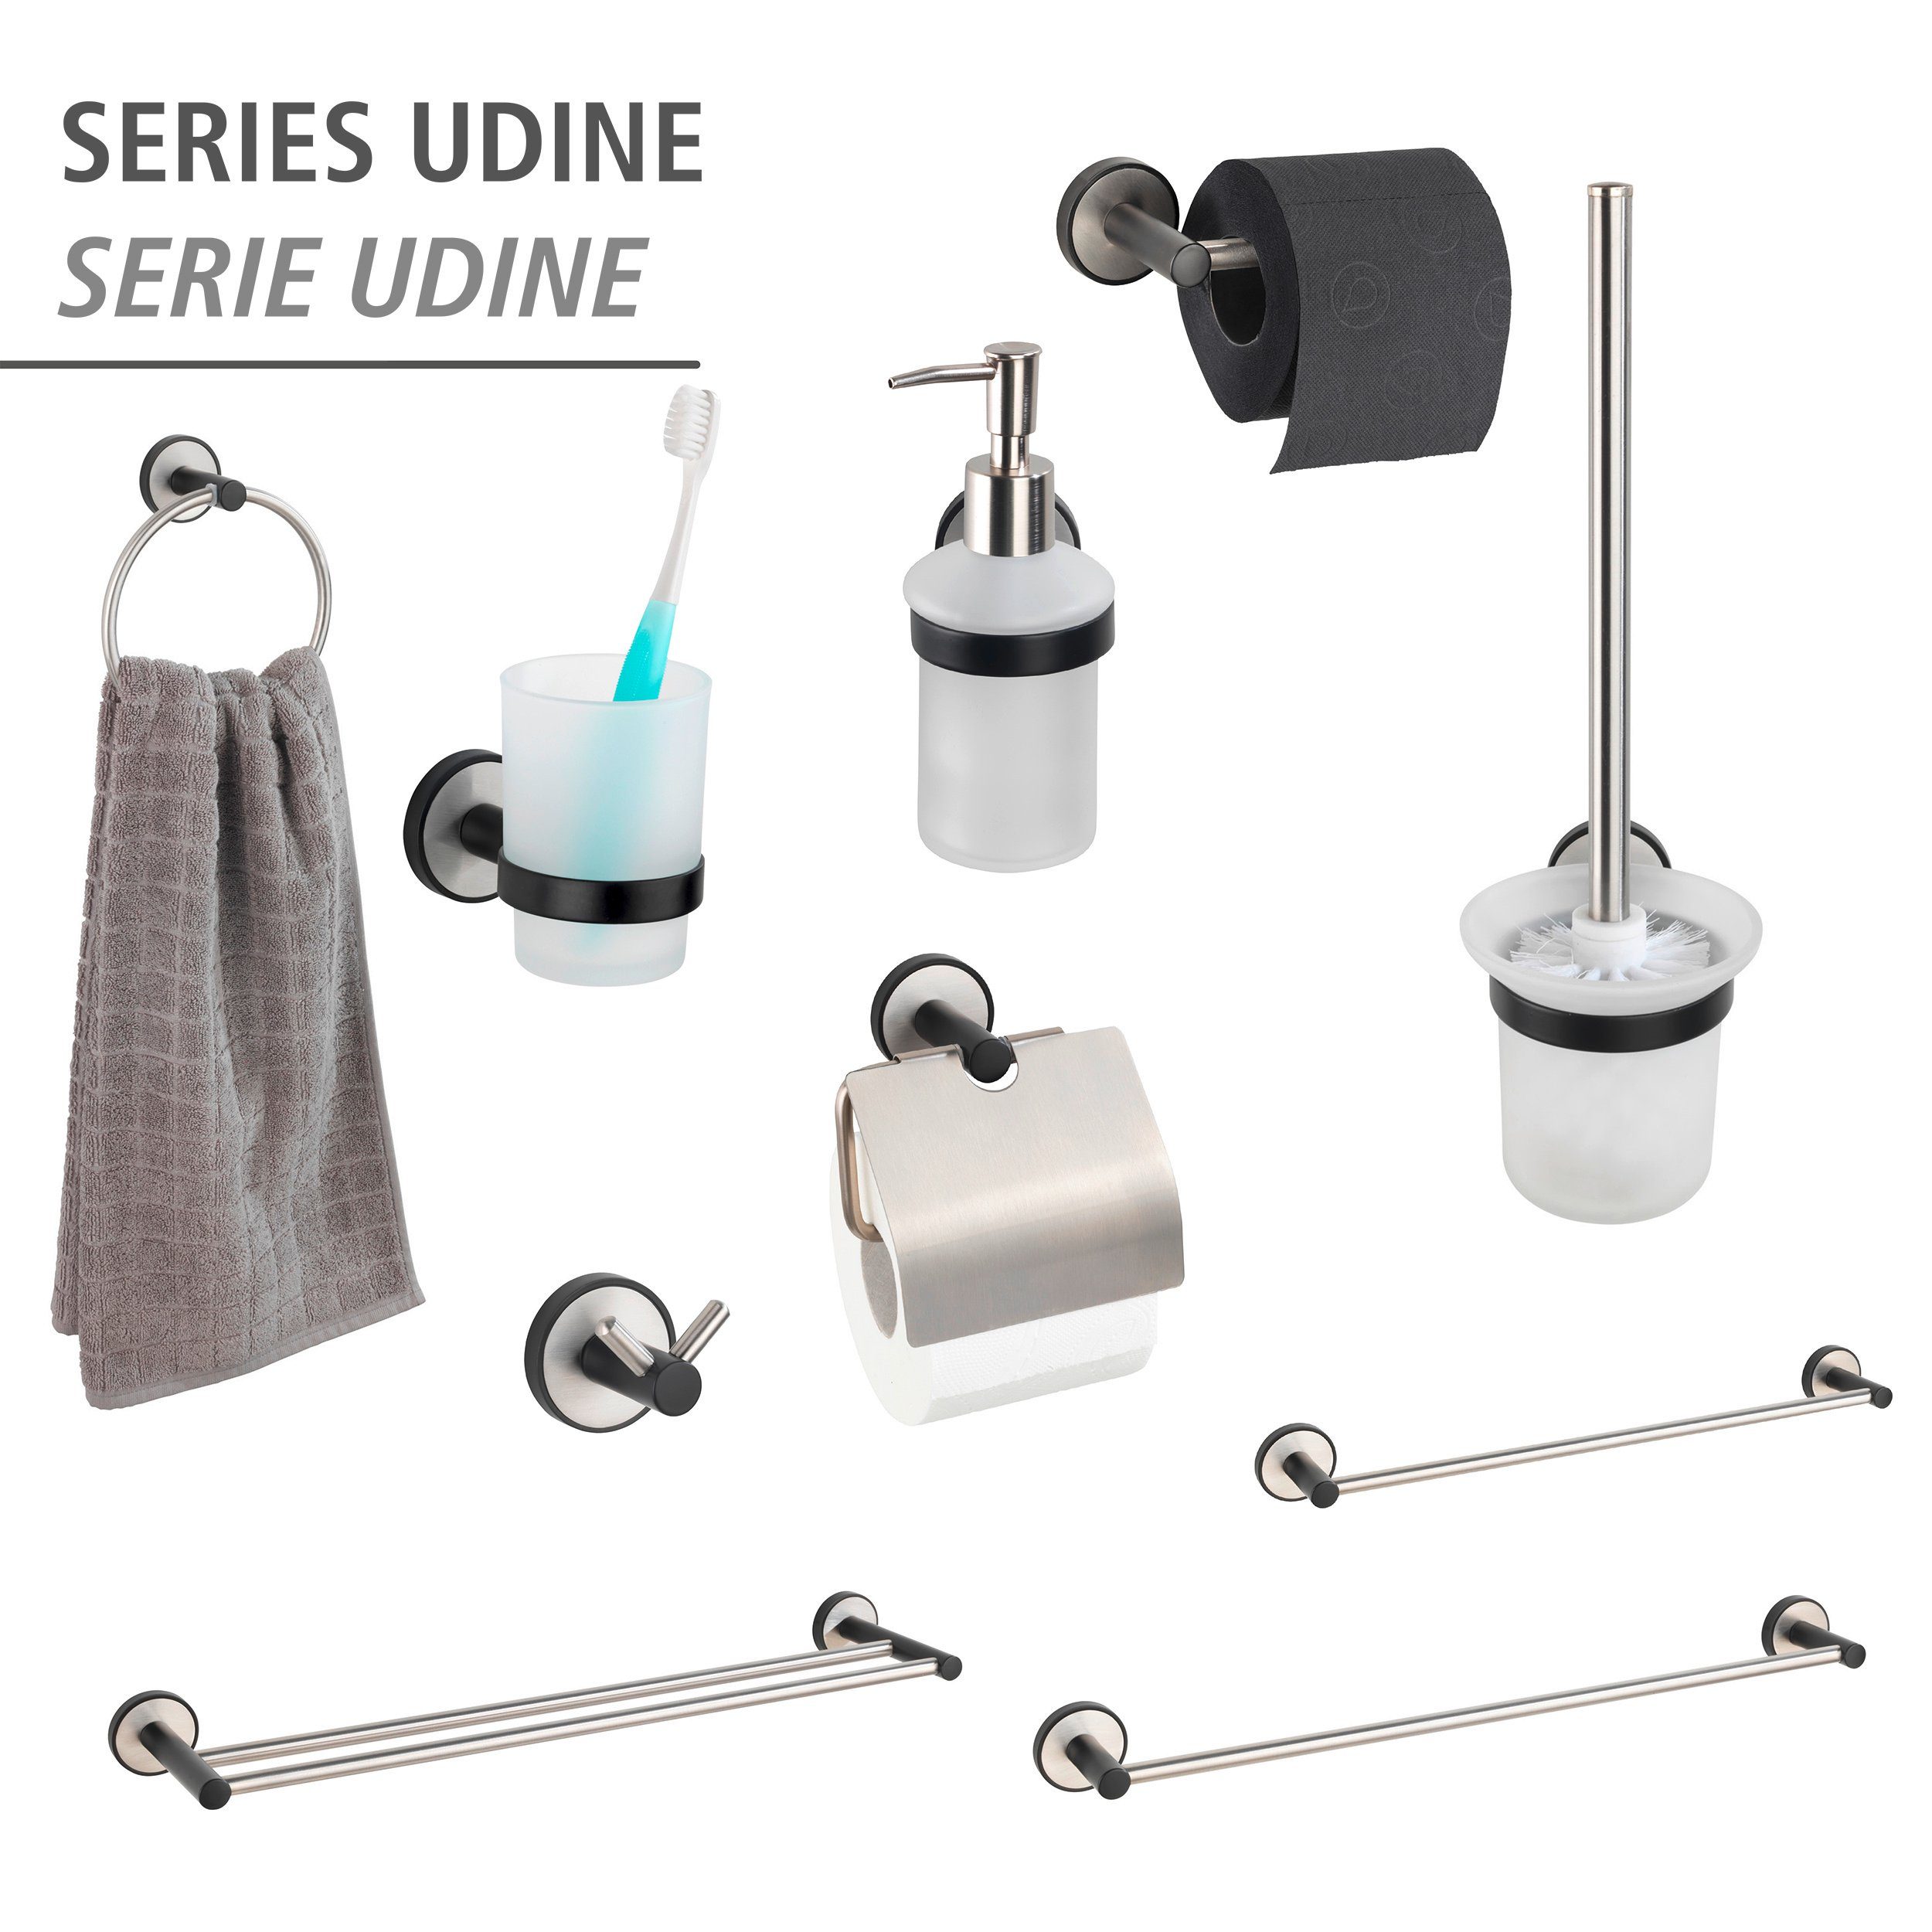 Bohren ohne WENKO befestigen Udine, UV-Loc® WC-Garnitur